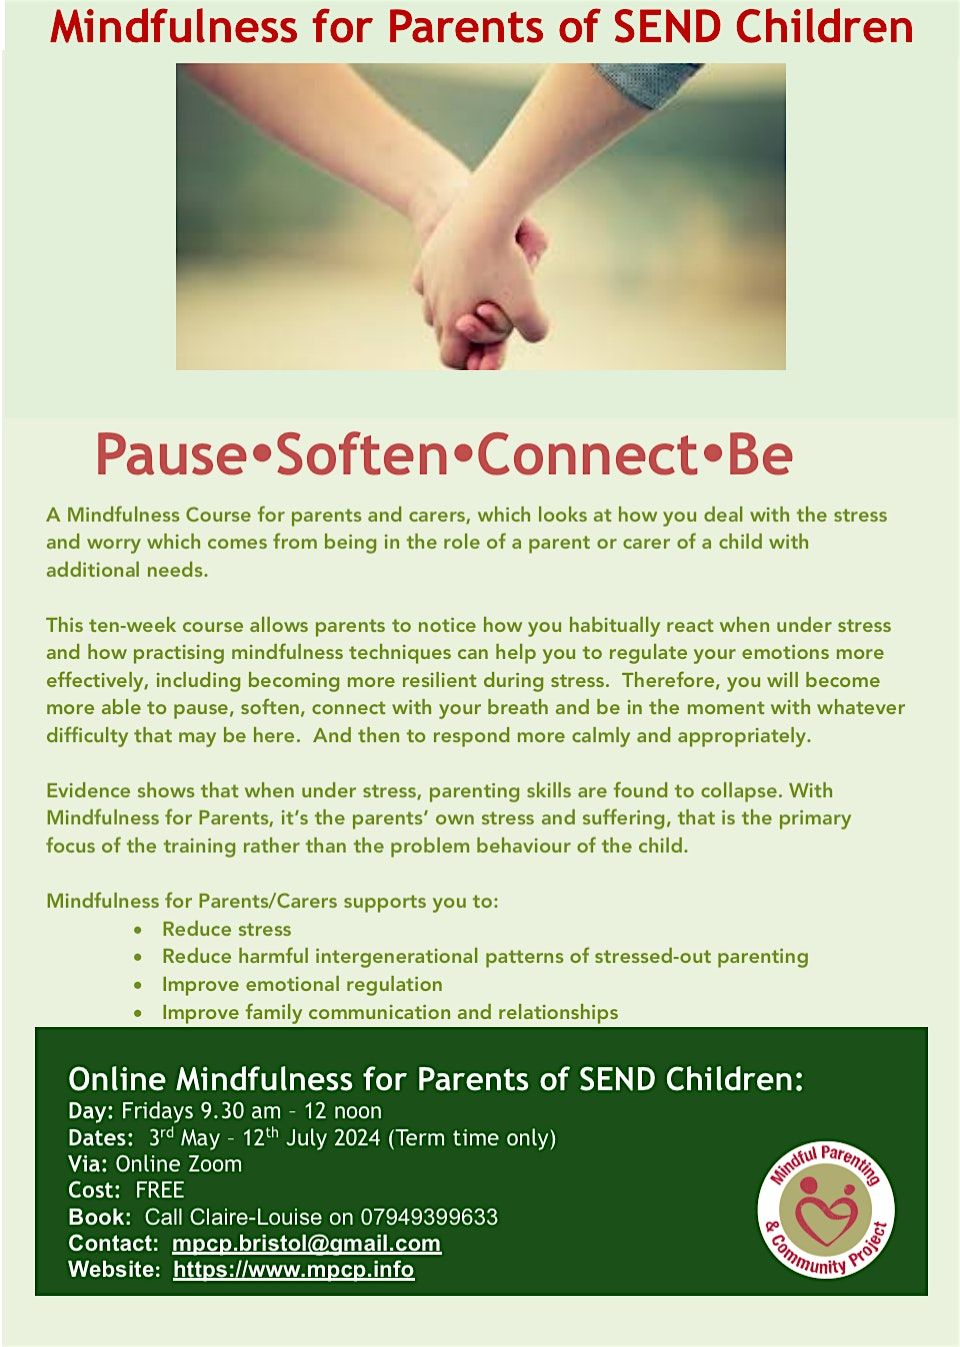 Online Mindfulness  for Parents of Children (SEND)